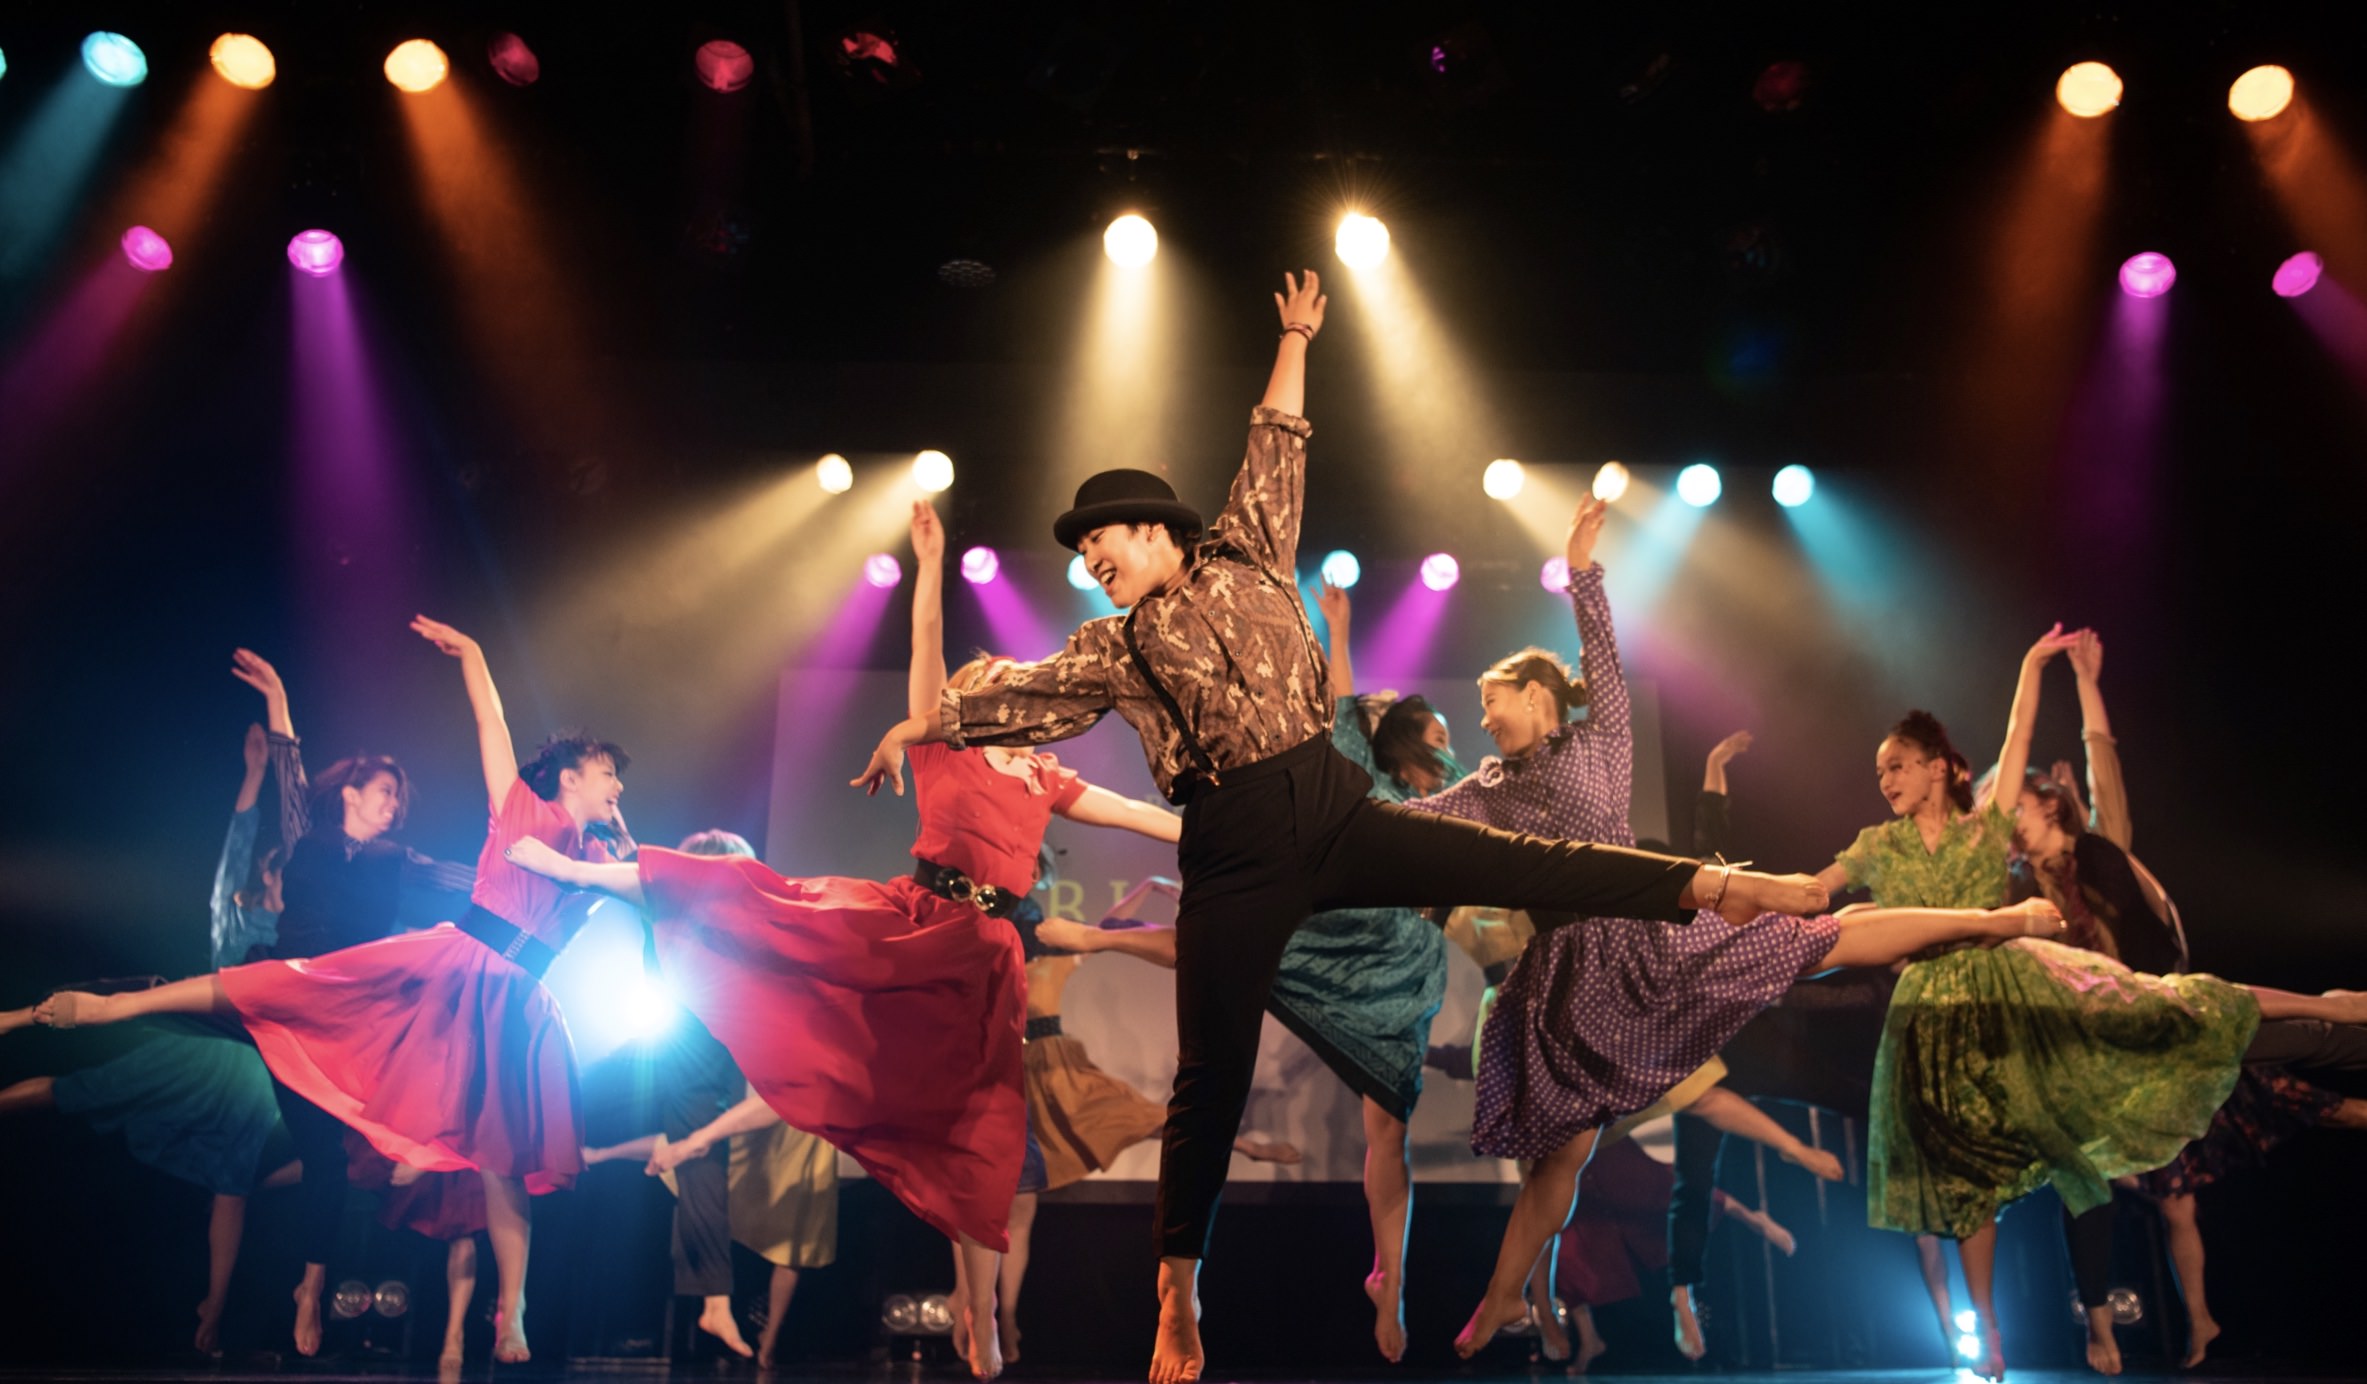 テーマはそれぞれの新しいダンス！「PULSE BEAT THEATER」座席で楽しむダンスイベント、川崎Club CITTA’で開催 – 人気の振付師約20組がダンス作品へ挑戦